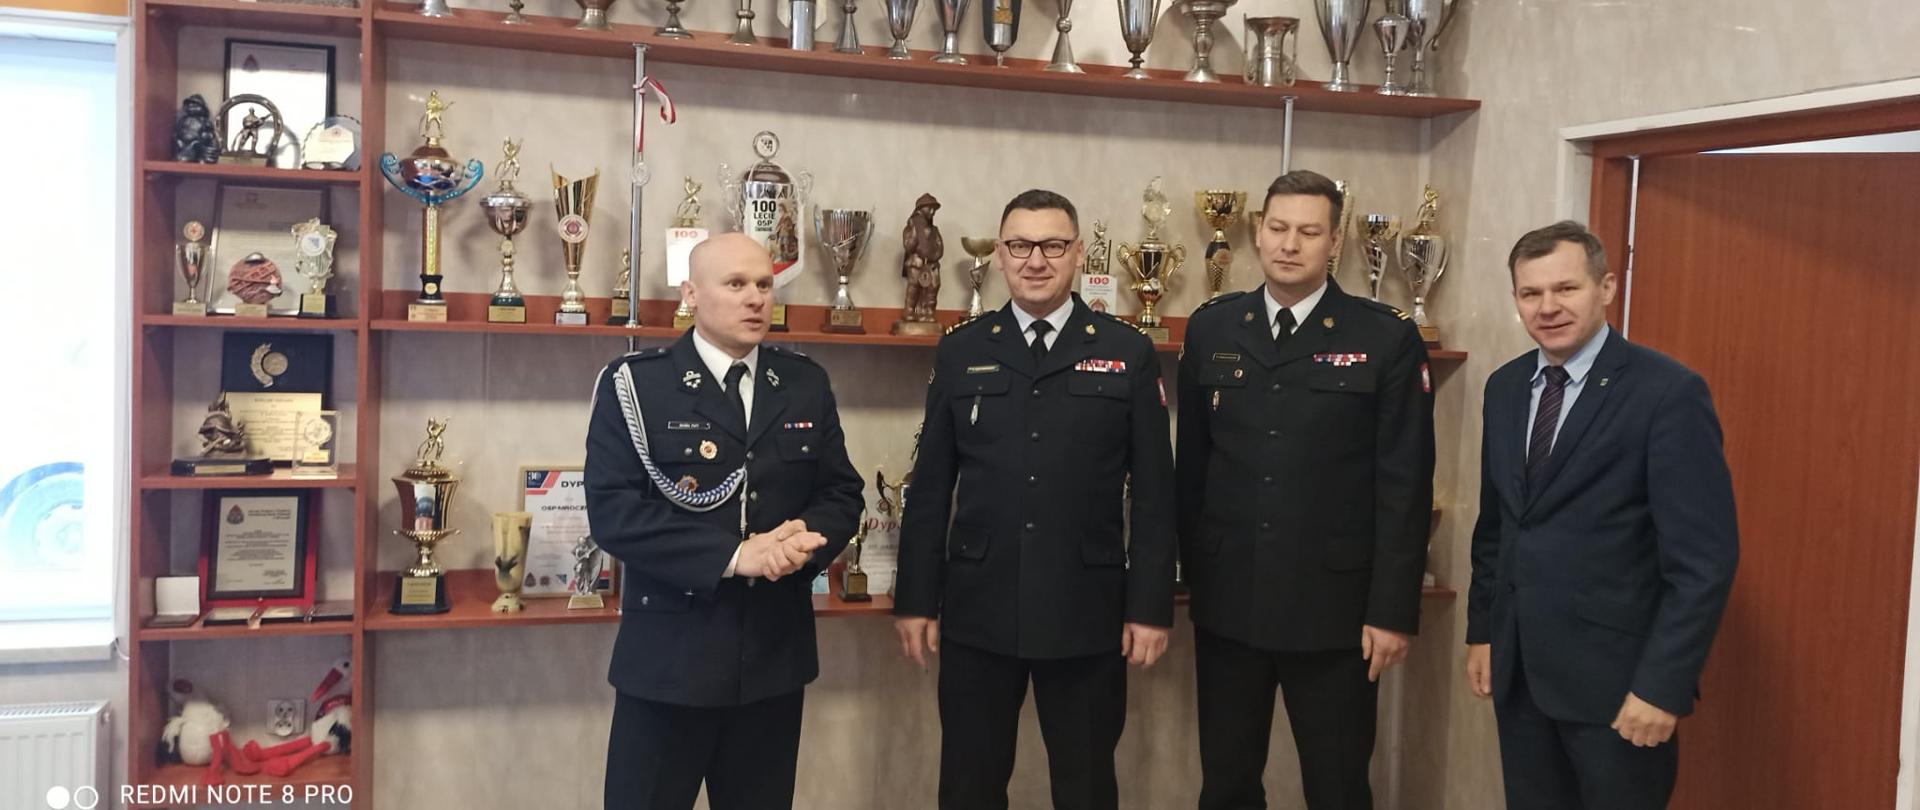 Zastępca Warmińsko-Mazurskiego Komendanta Wojewódzkiego Państwowej Straży Pożarnej wizytował jednostki OSP z powiatu nowomiejskiego